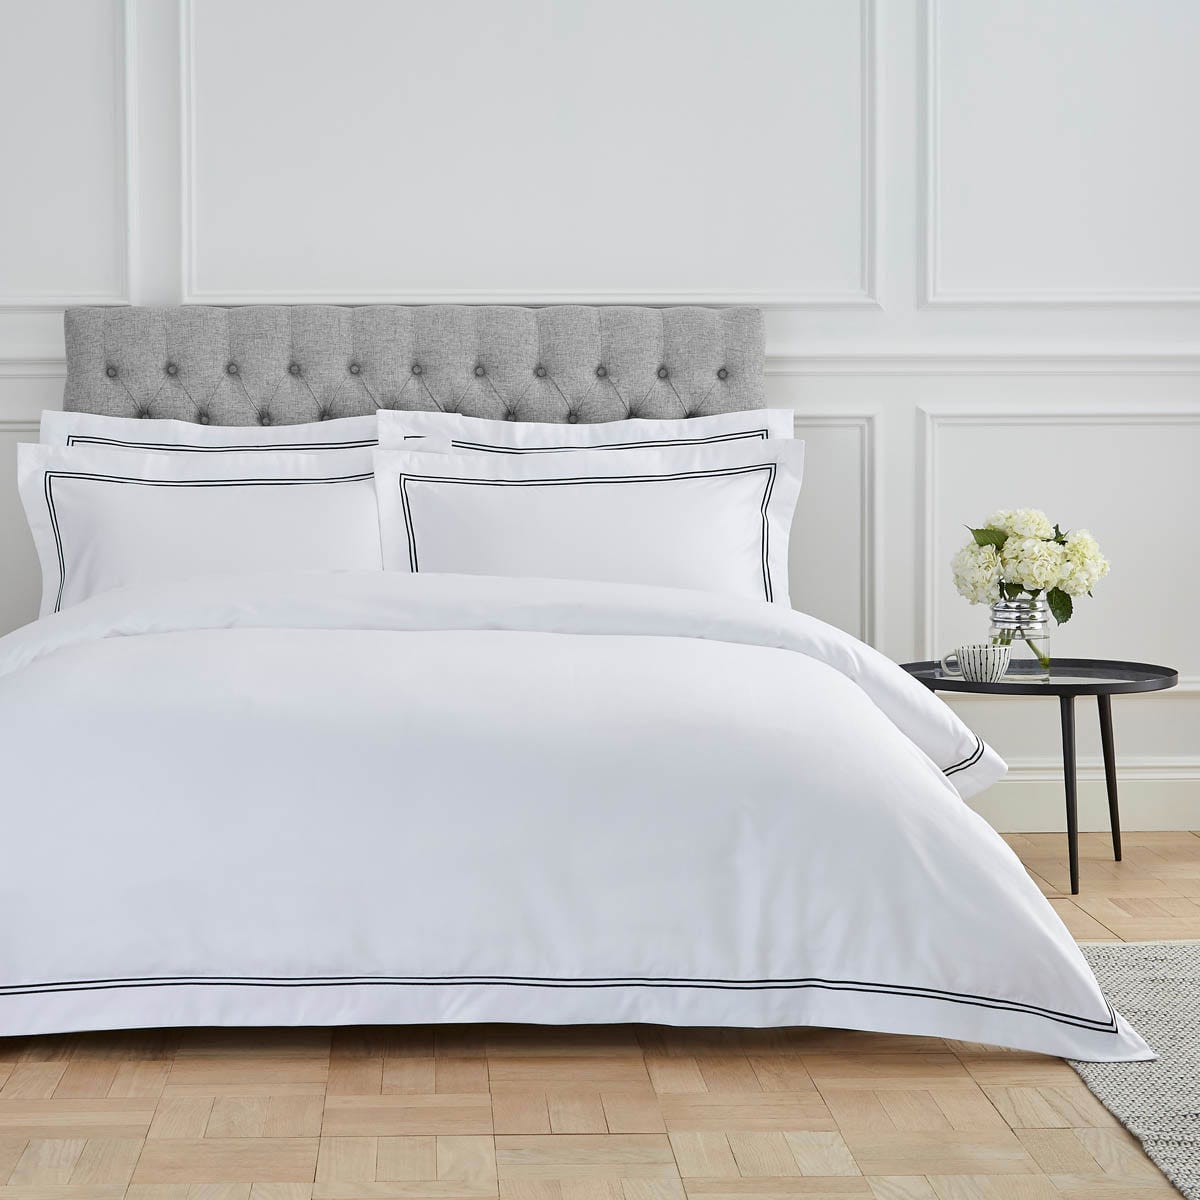 Pair of Kensington Oxford Pillowcases - 800 TC - Egyptian Cotton - White/Black - DUSK